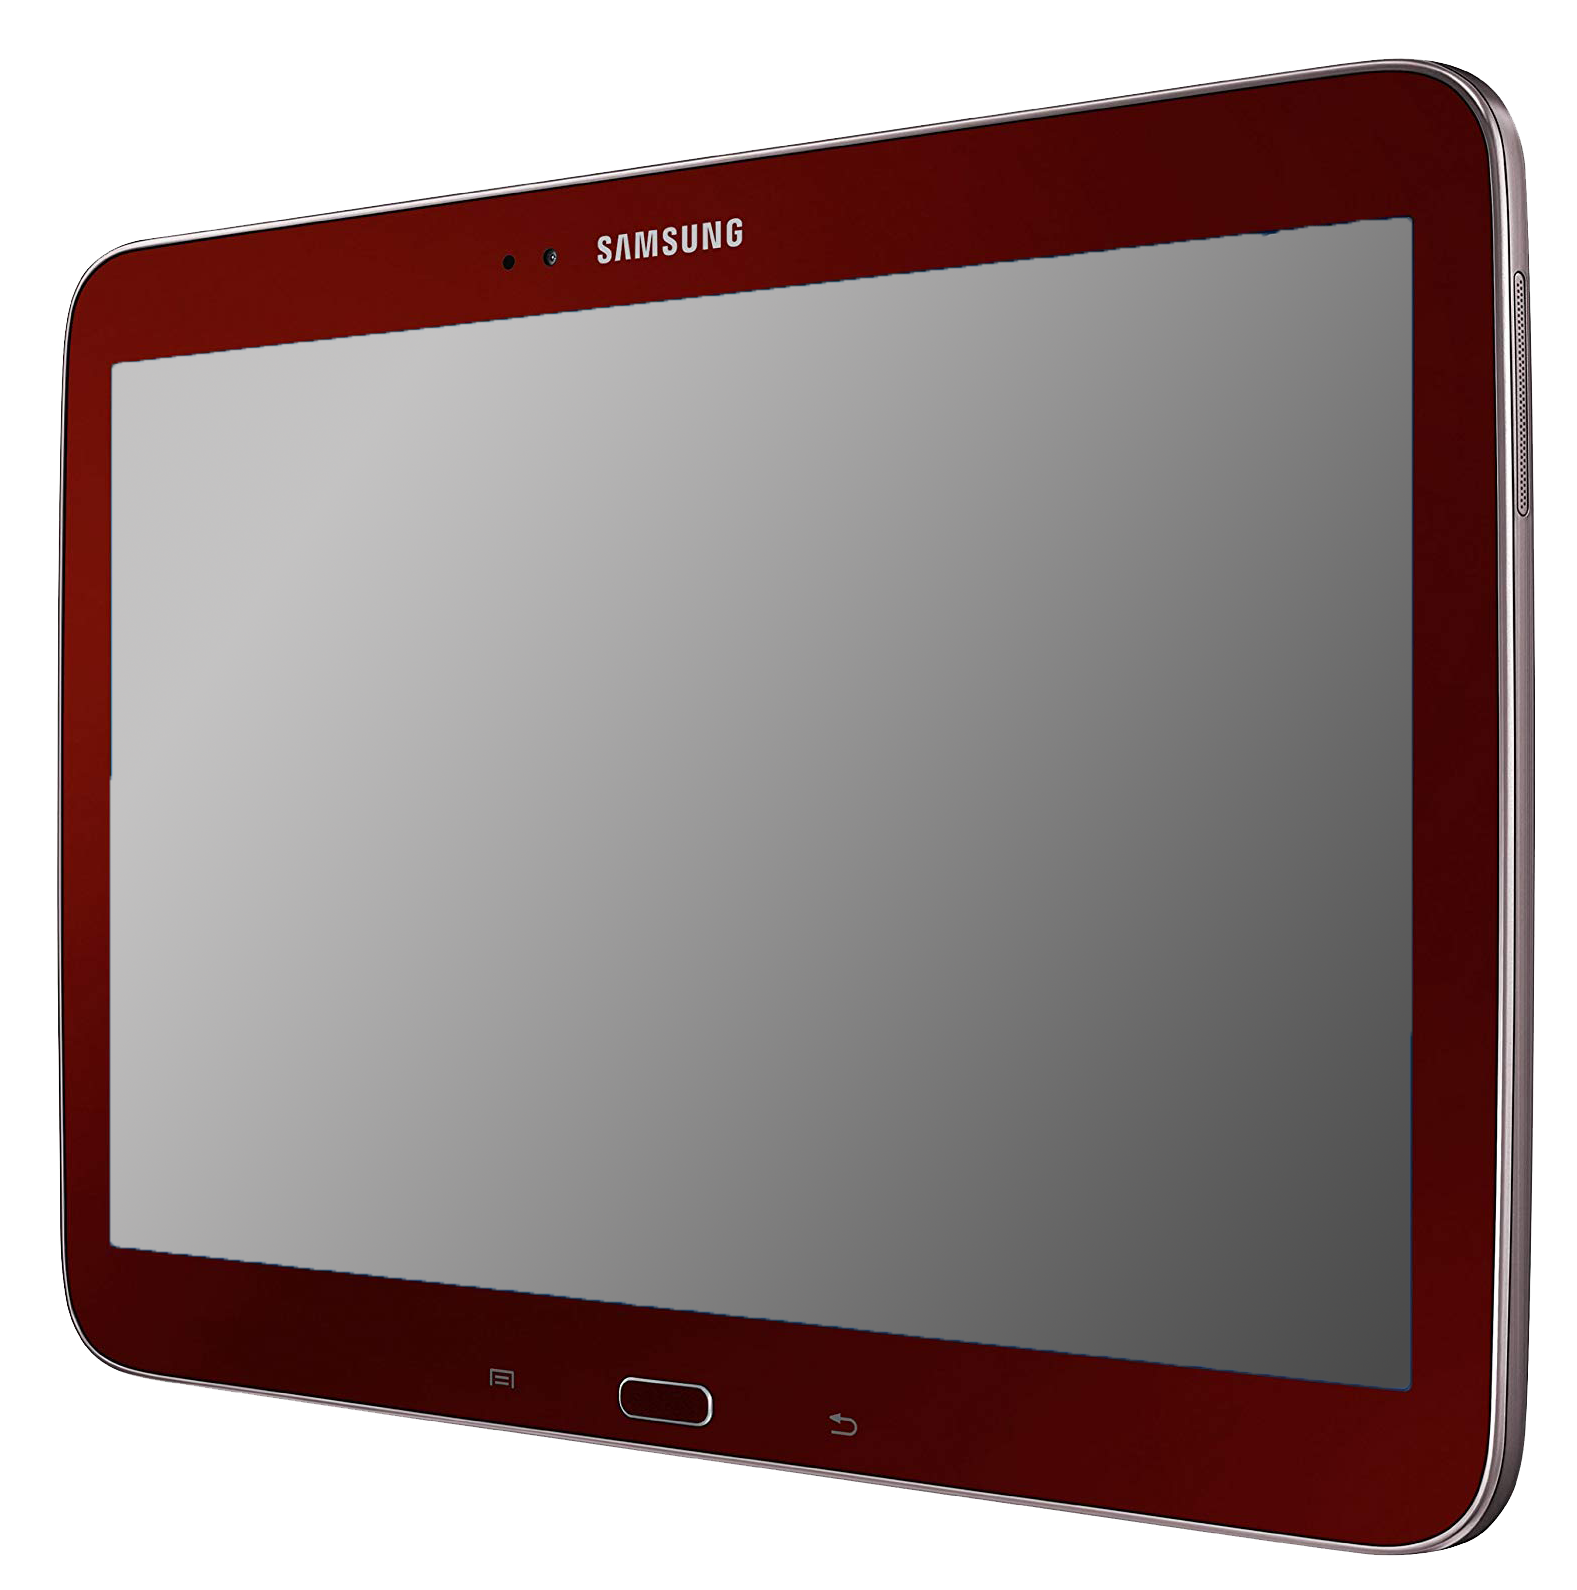 Samsung Galaxy Tab 3 10.1 3G gold - Ohne Vertrag